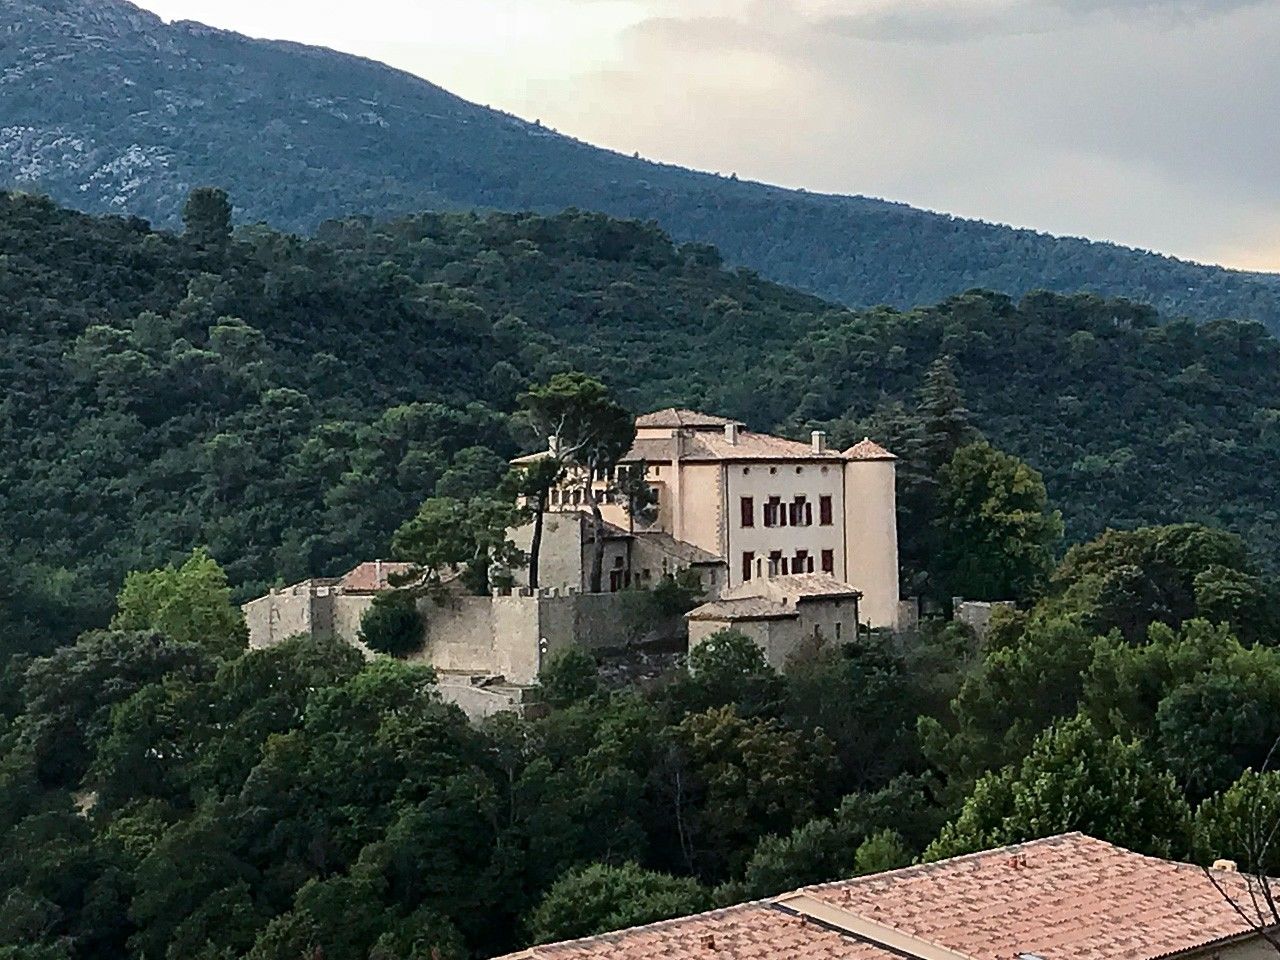 Château de Vauvenargues outside Aix-en-Provence, France, the last resting place of Pablo Picasso.